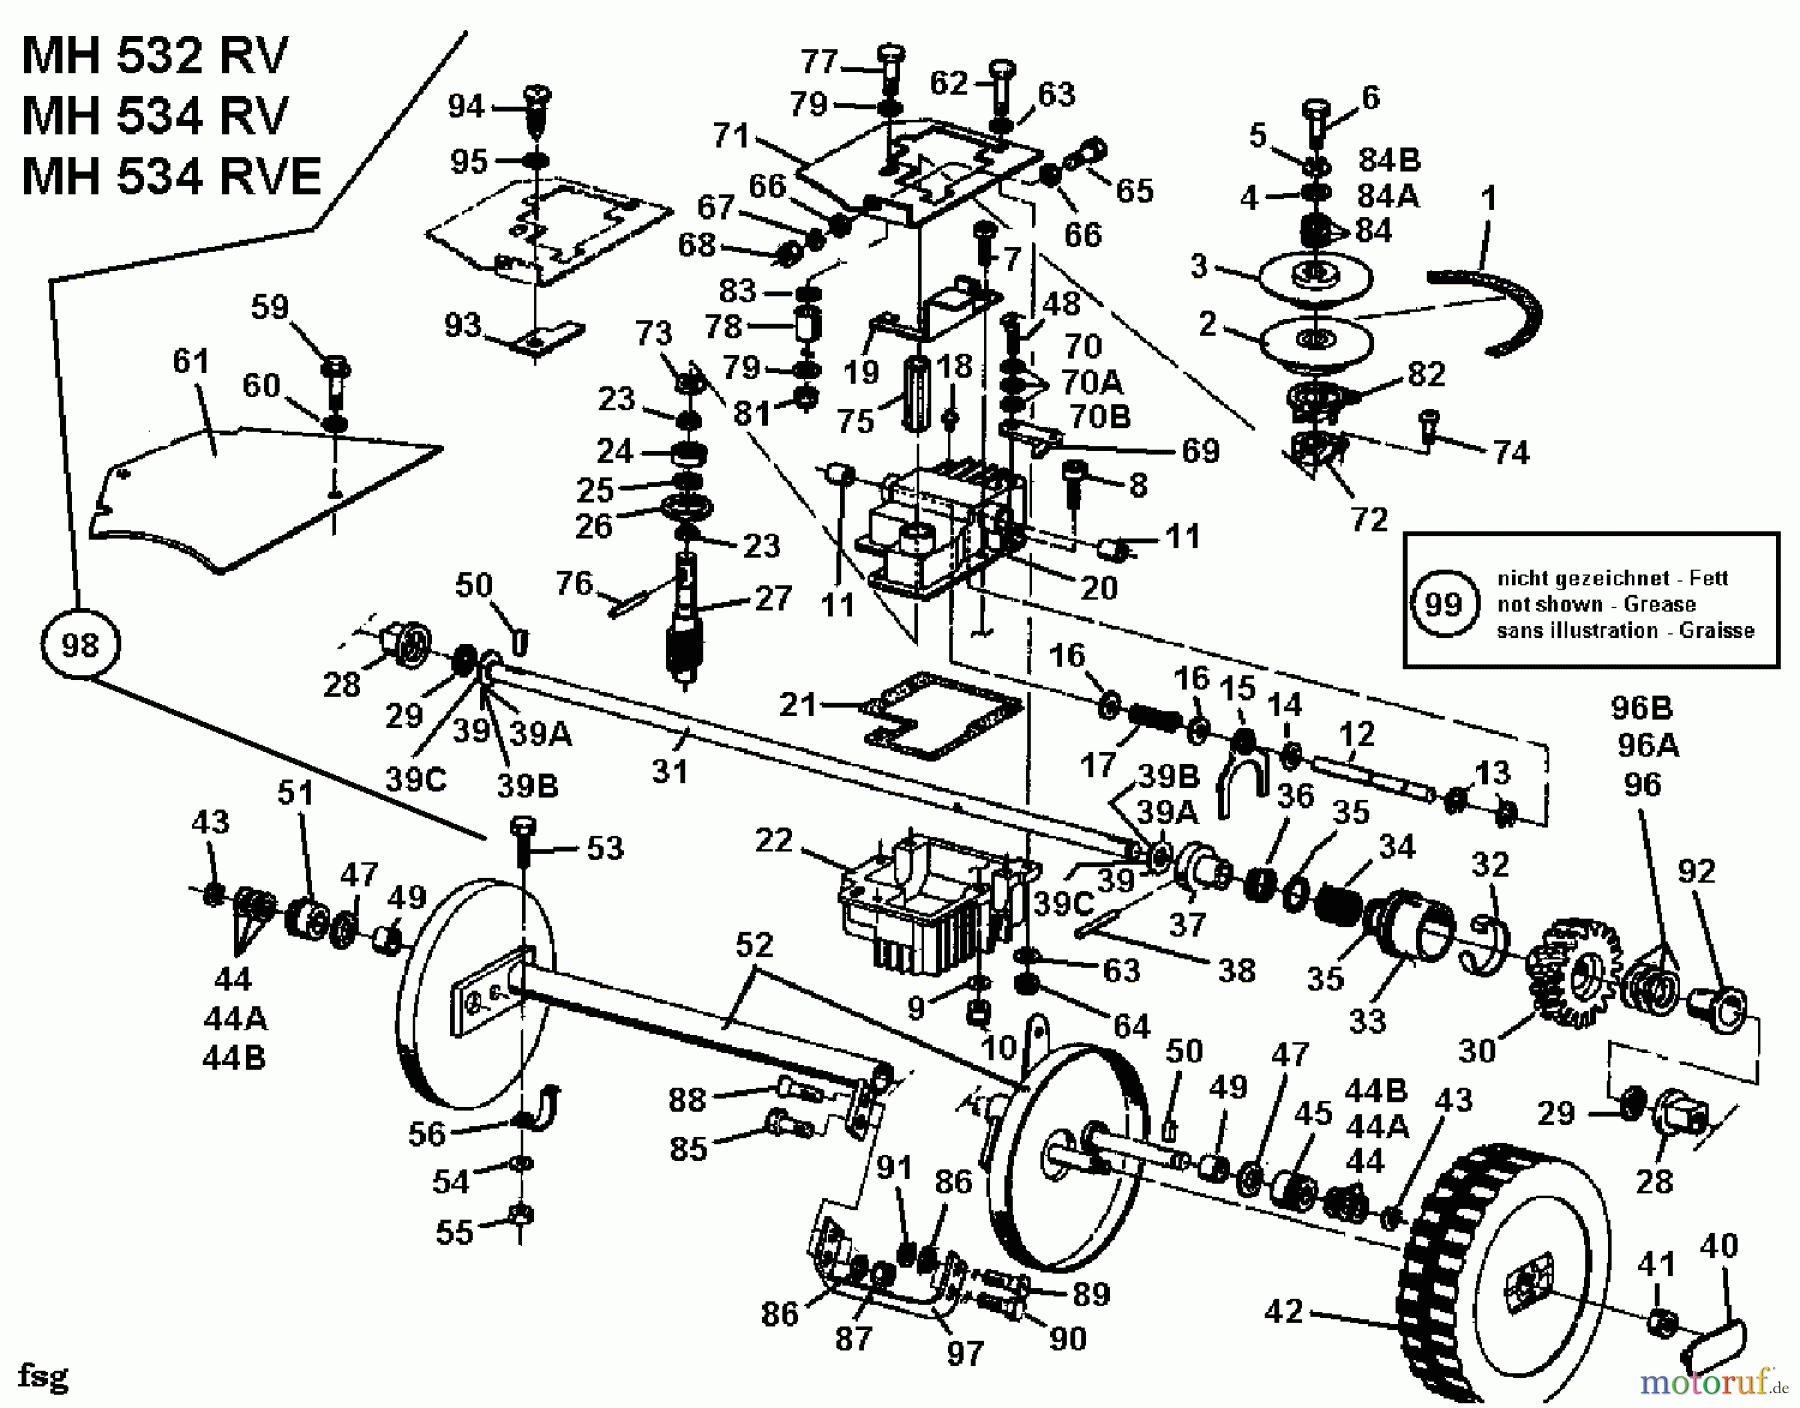  Gutbrod Motormäher mit Antrieb MH 534 RVE 04007.03  (1995) Getriebe, Räder